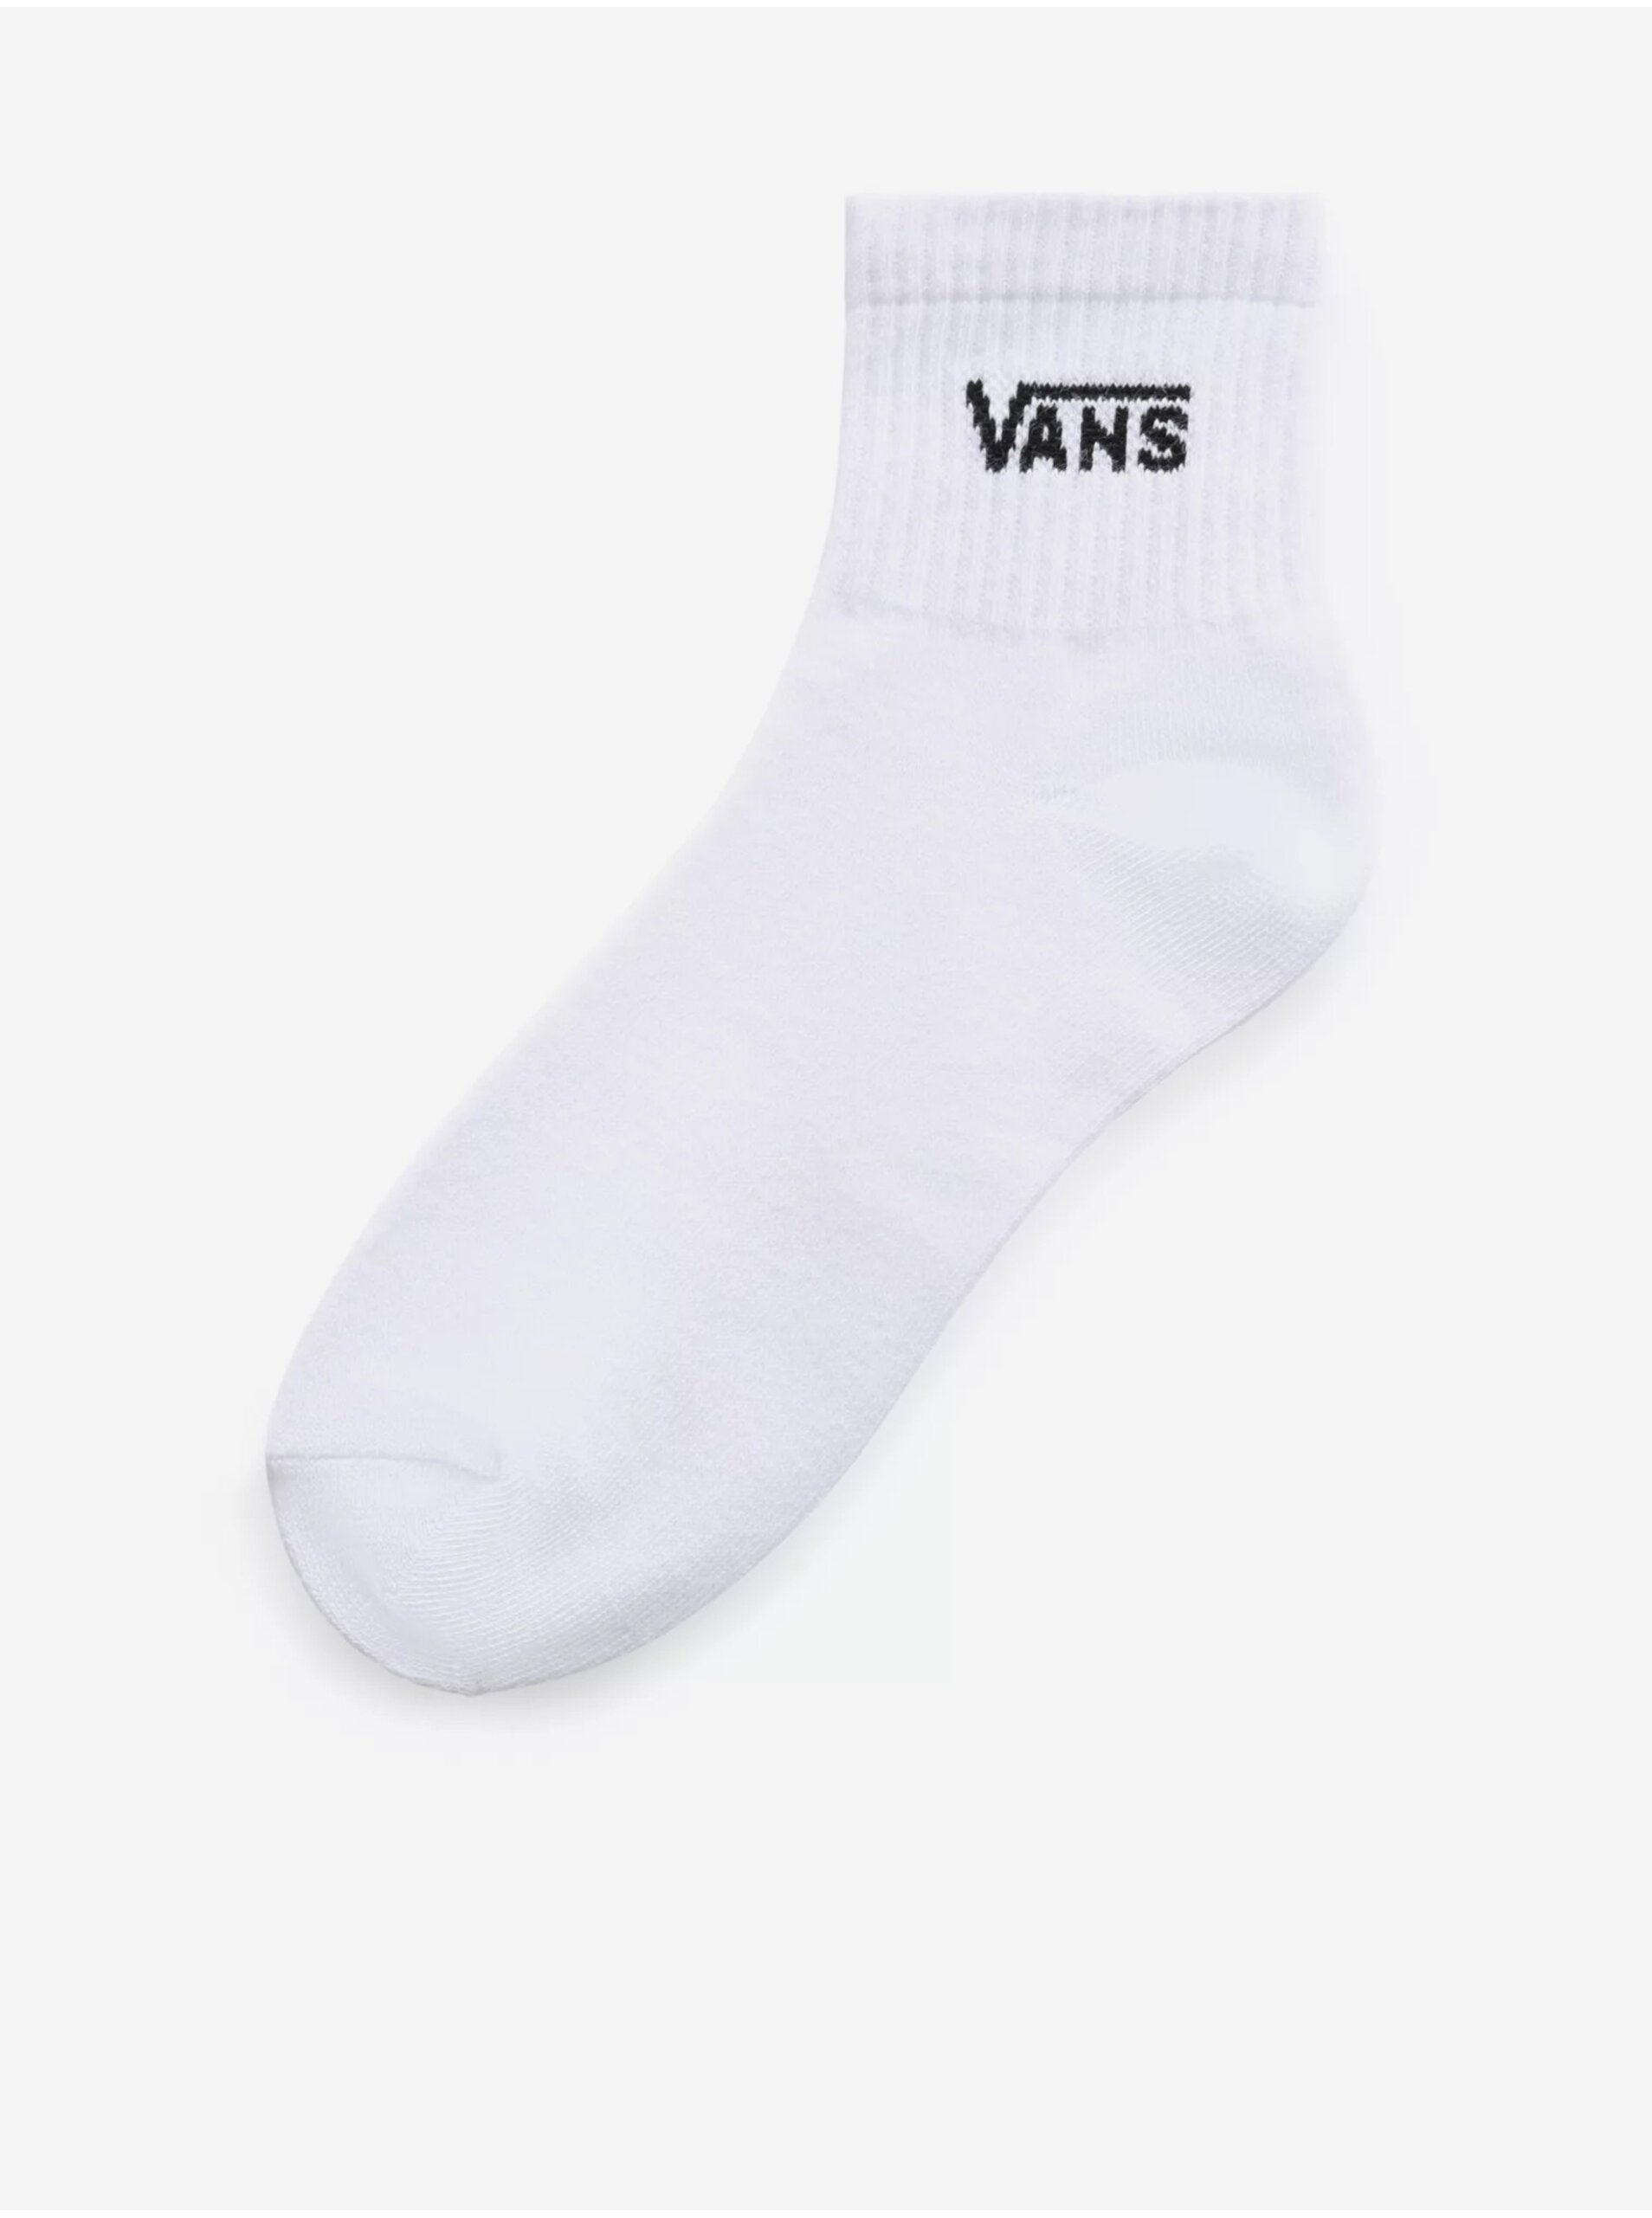 Lacno Biele dámske ponožky VANS